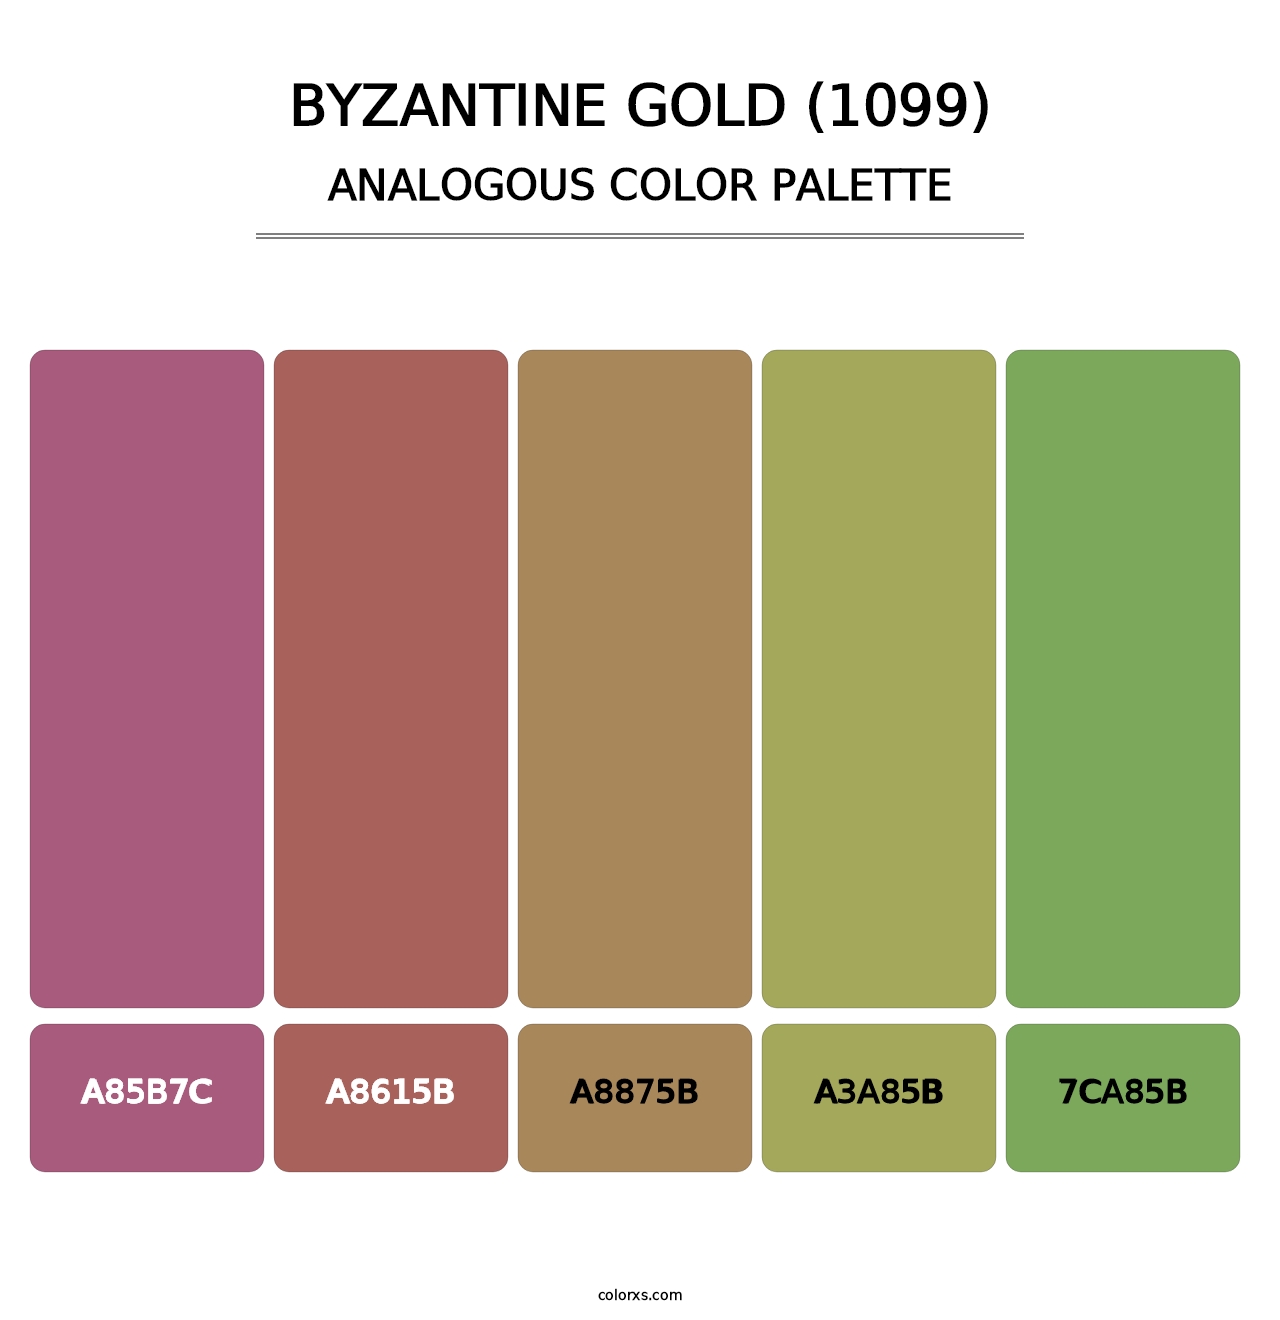 Byzantine Gold (1099) - Analogous Color Palette